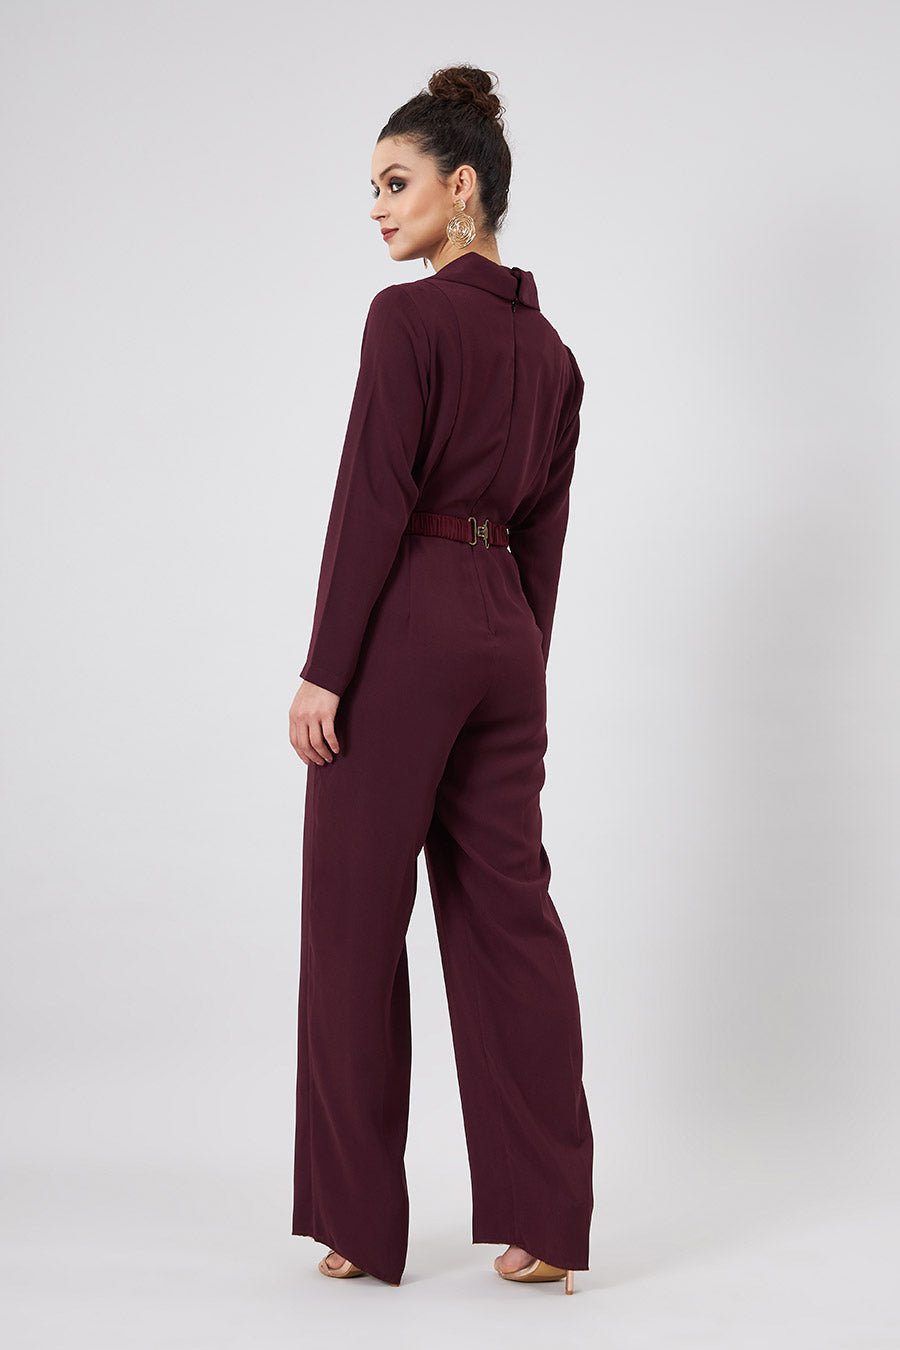 Ruby Formal Jumpsuit With Embellished Belt